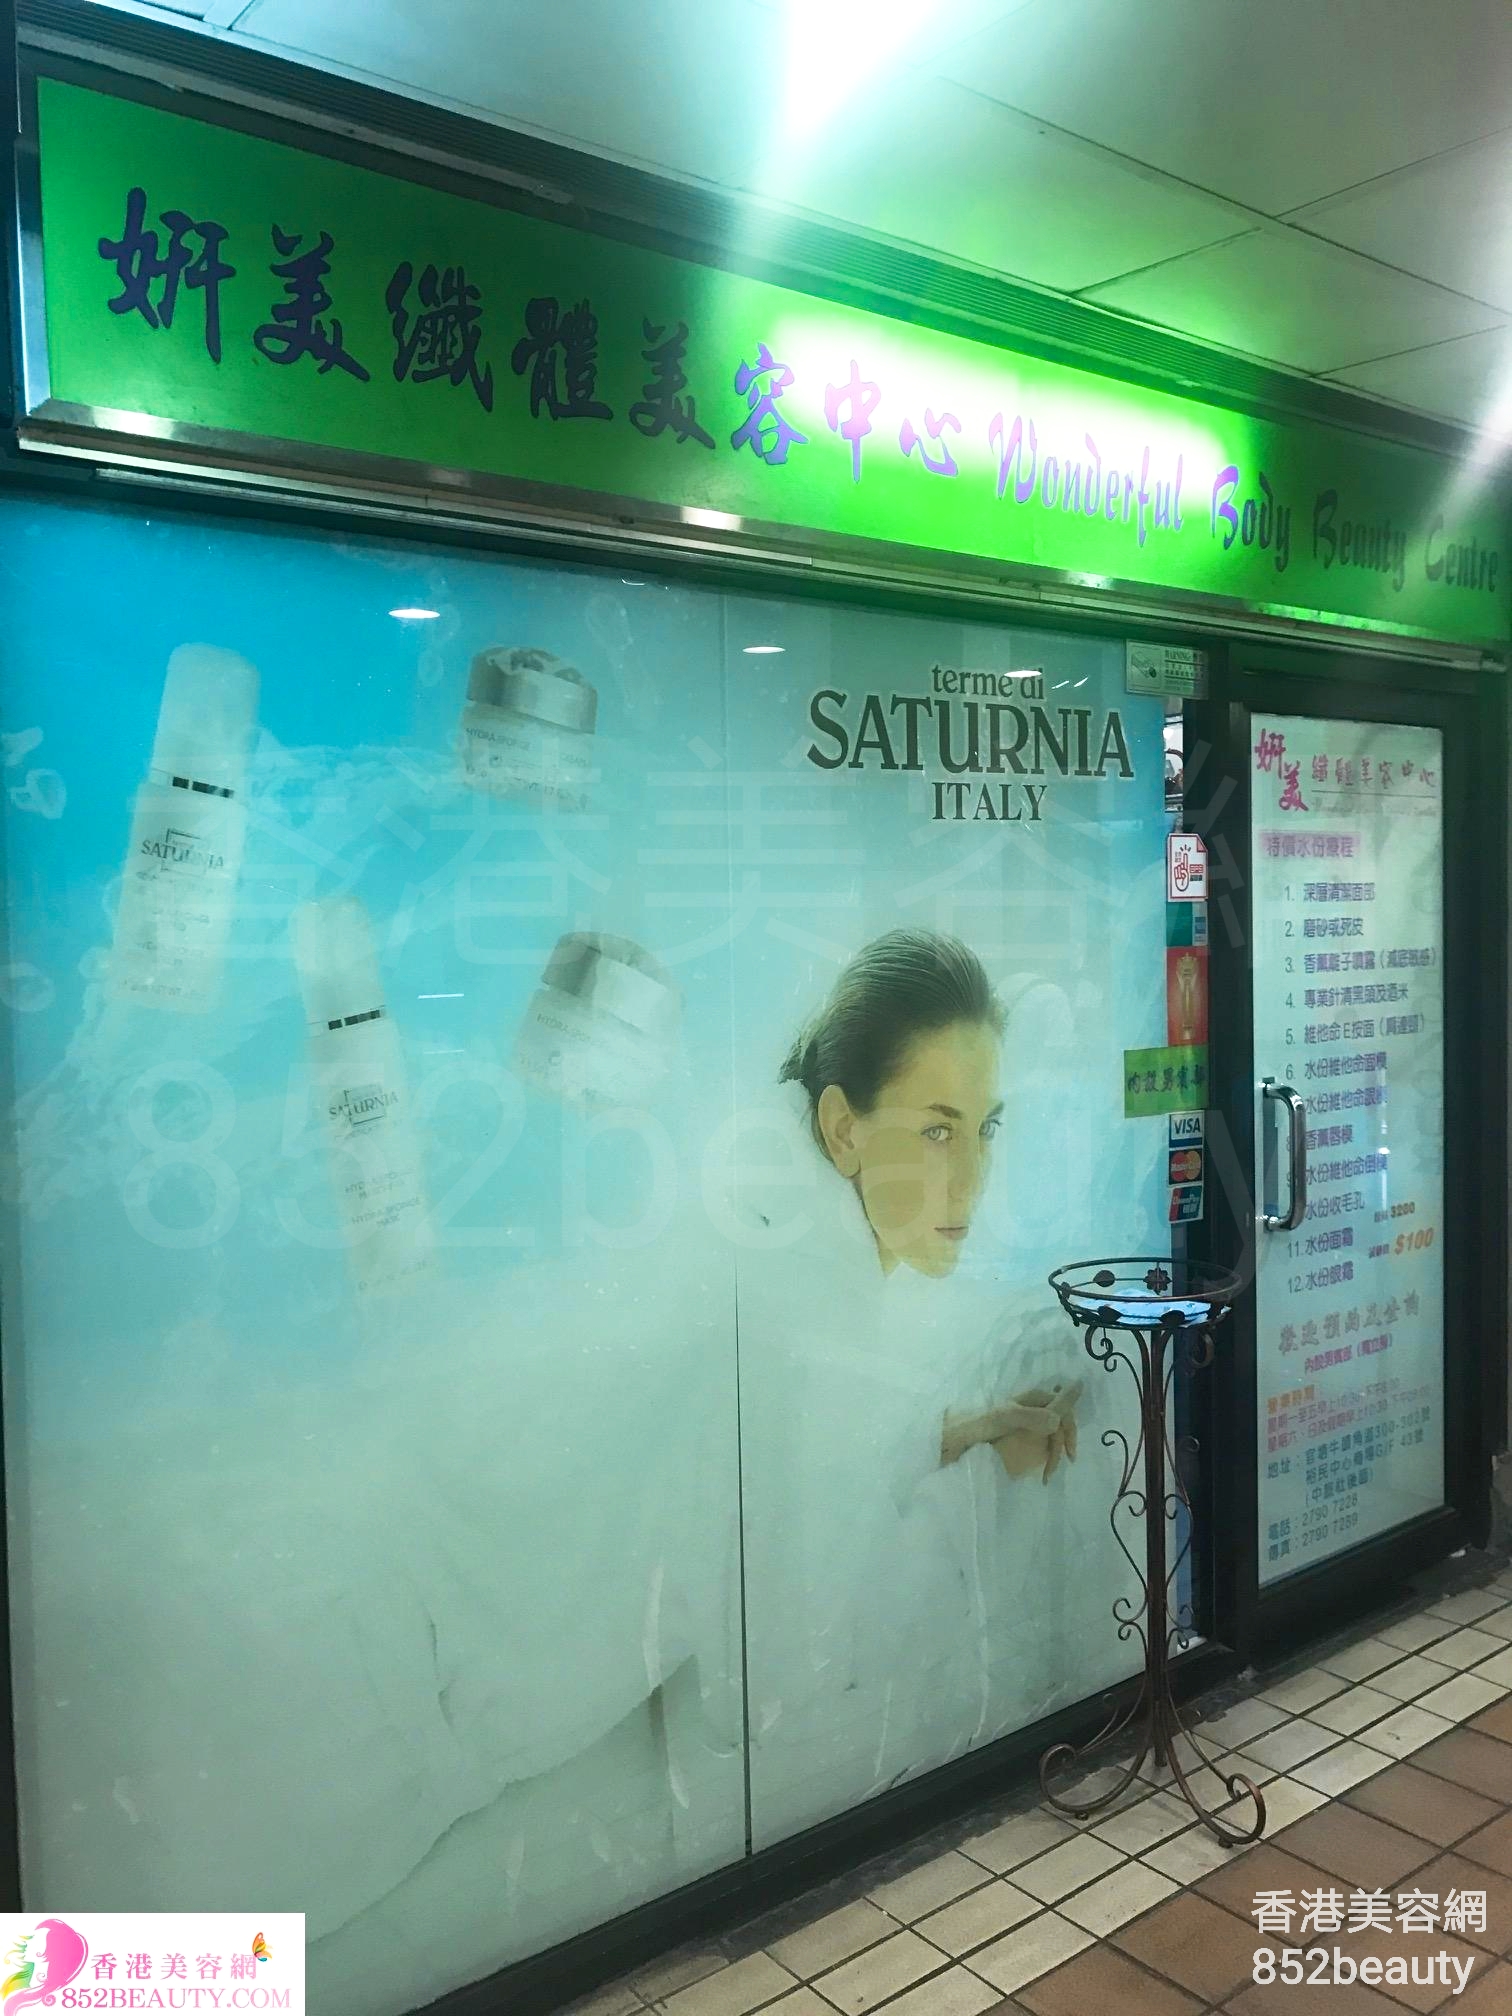 香港美容網 Hong Kong Beauty Salon 美容院 / 美容師: 妍美纖體美容中心 Wonderful Body Beauty Centre